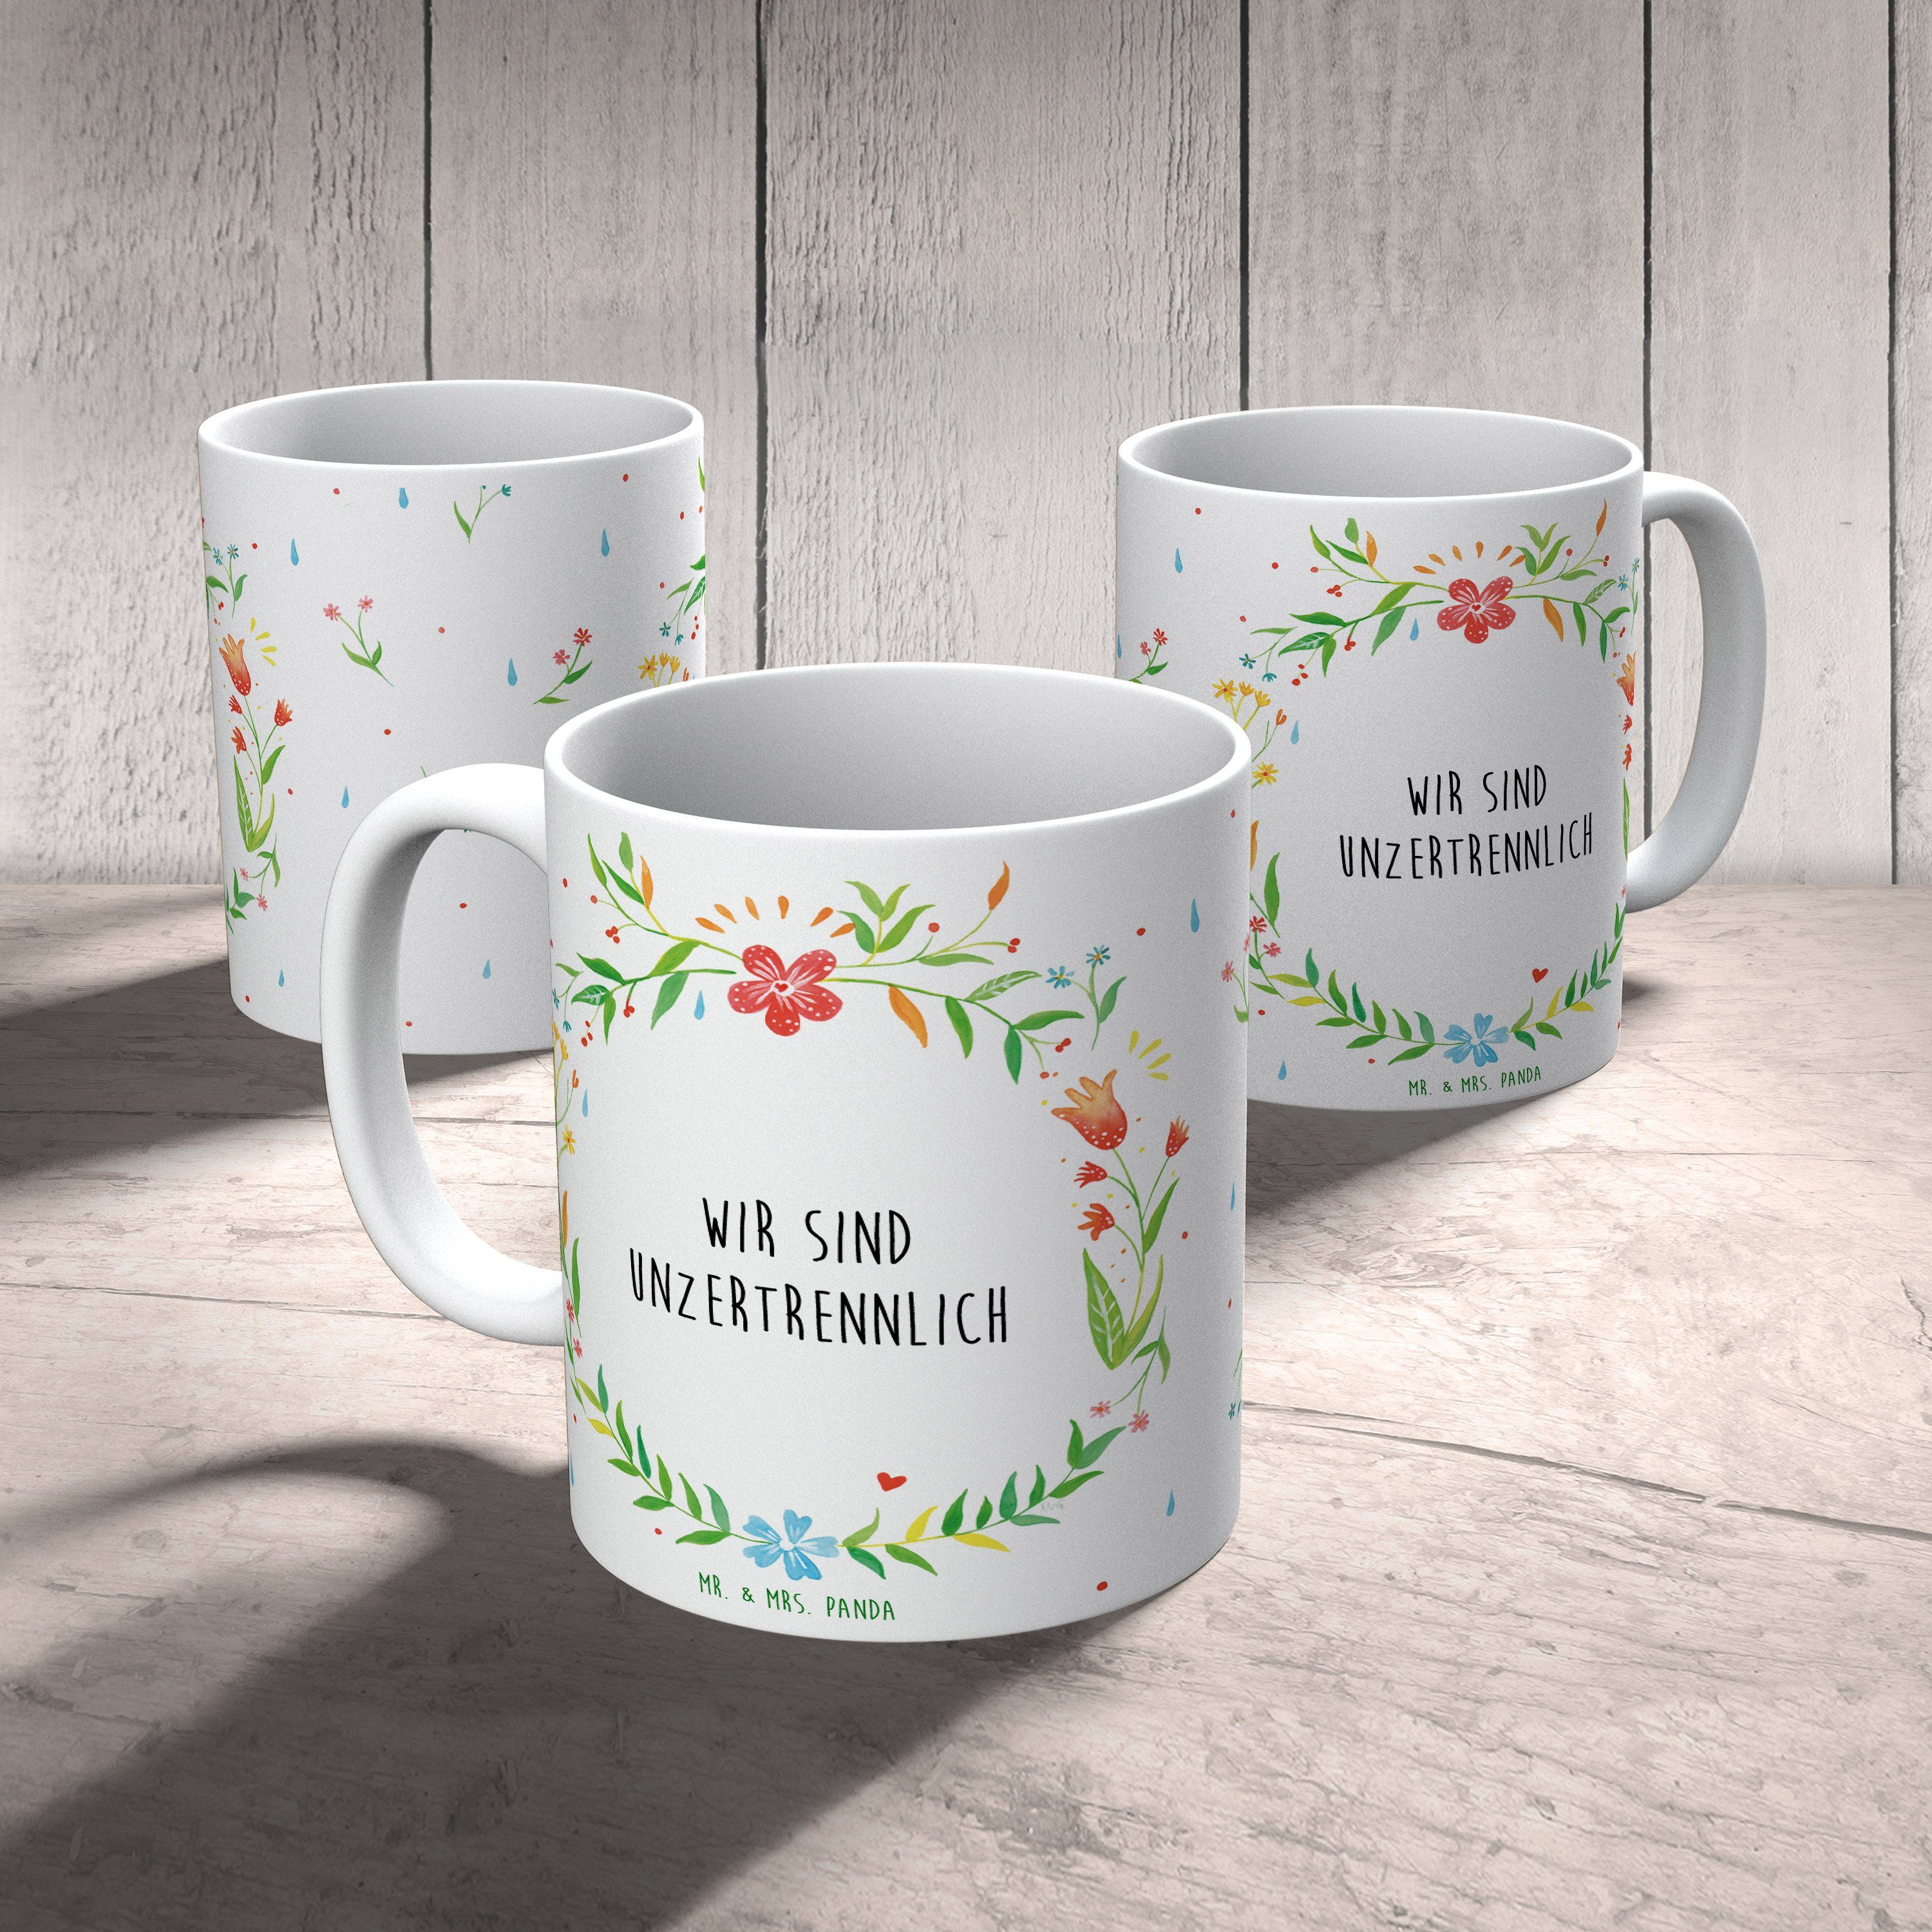 Mr. & Mrs. Panda Tasse Keramik Motive, unzertrennlich Wir T, - Geschenk, Becher, Tasse sind Teetasse